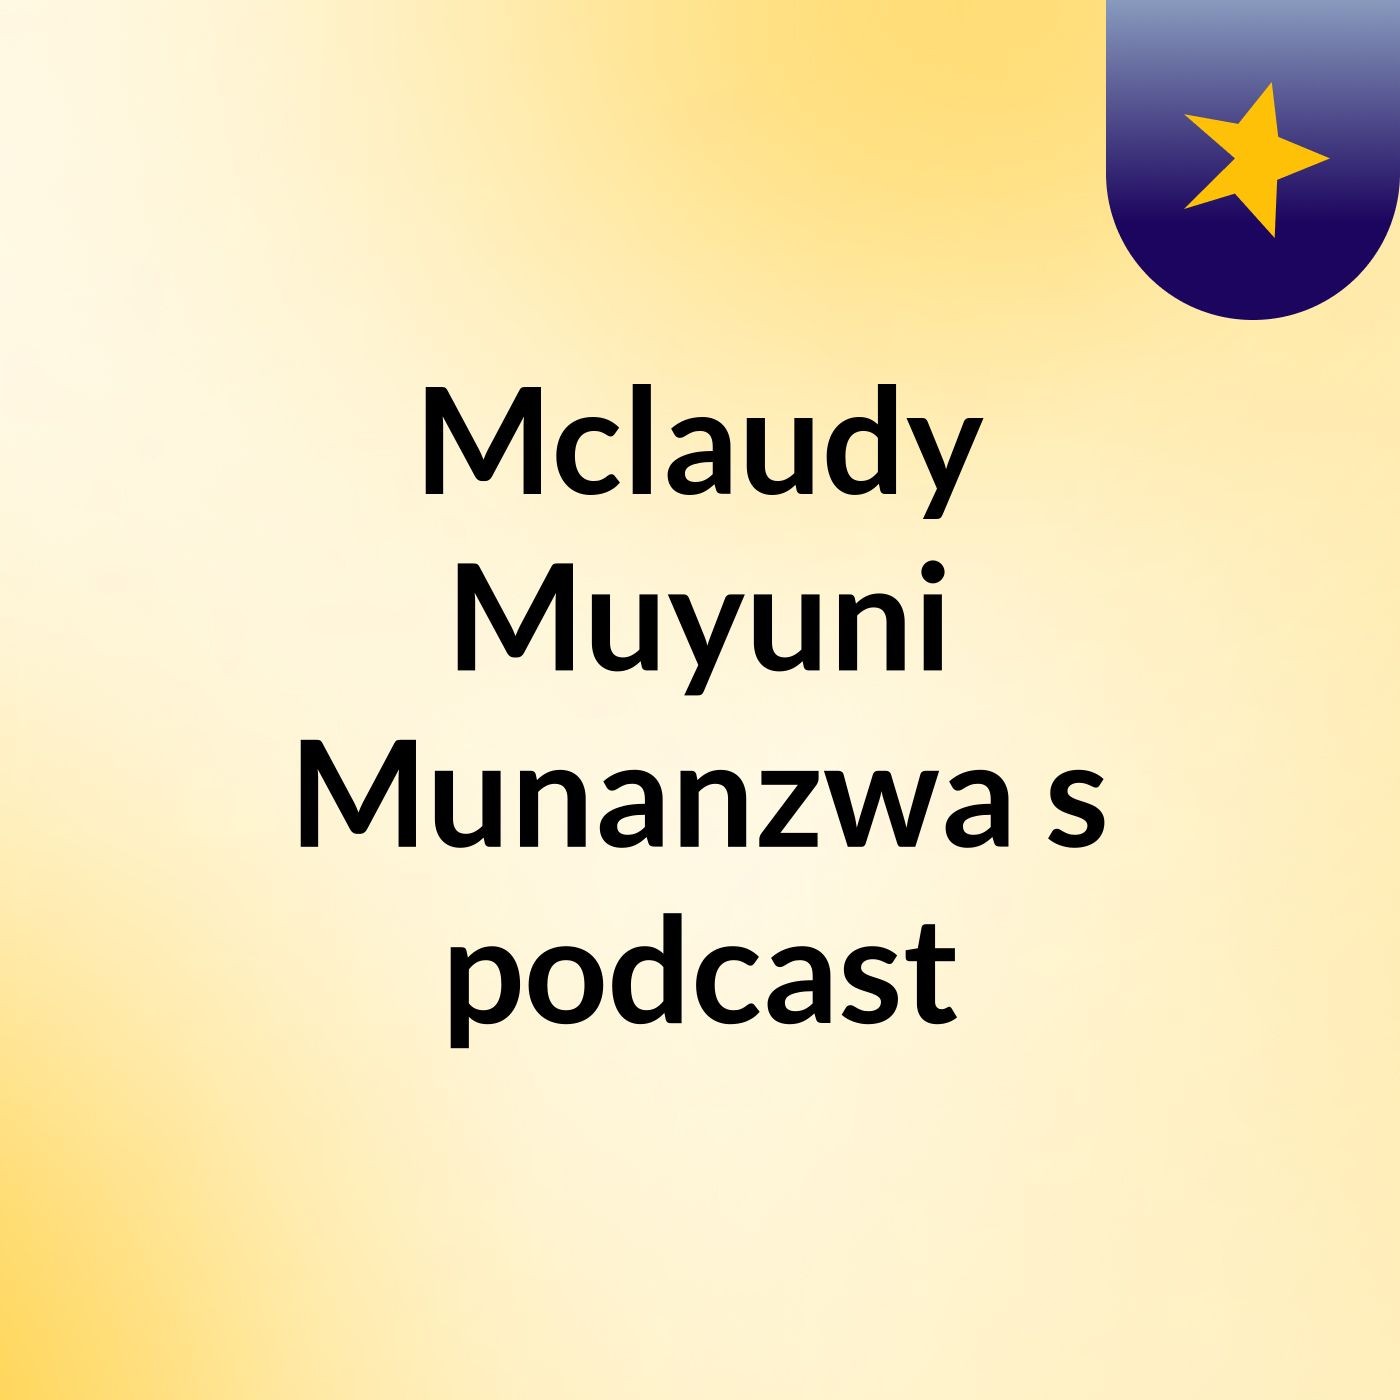 Episode 3 - Mclaudy Muyuni Munanzwa's podcast